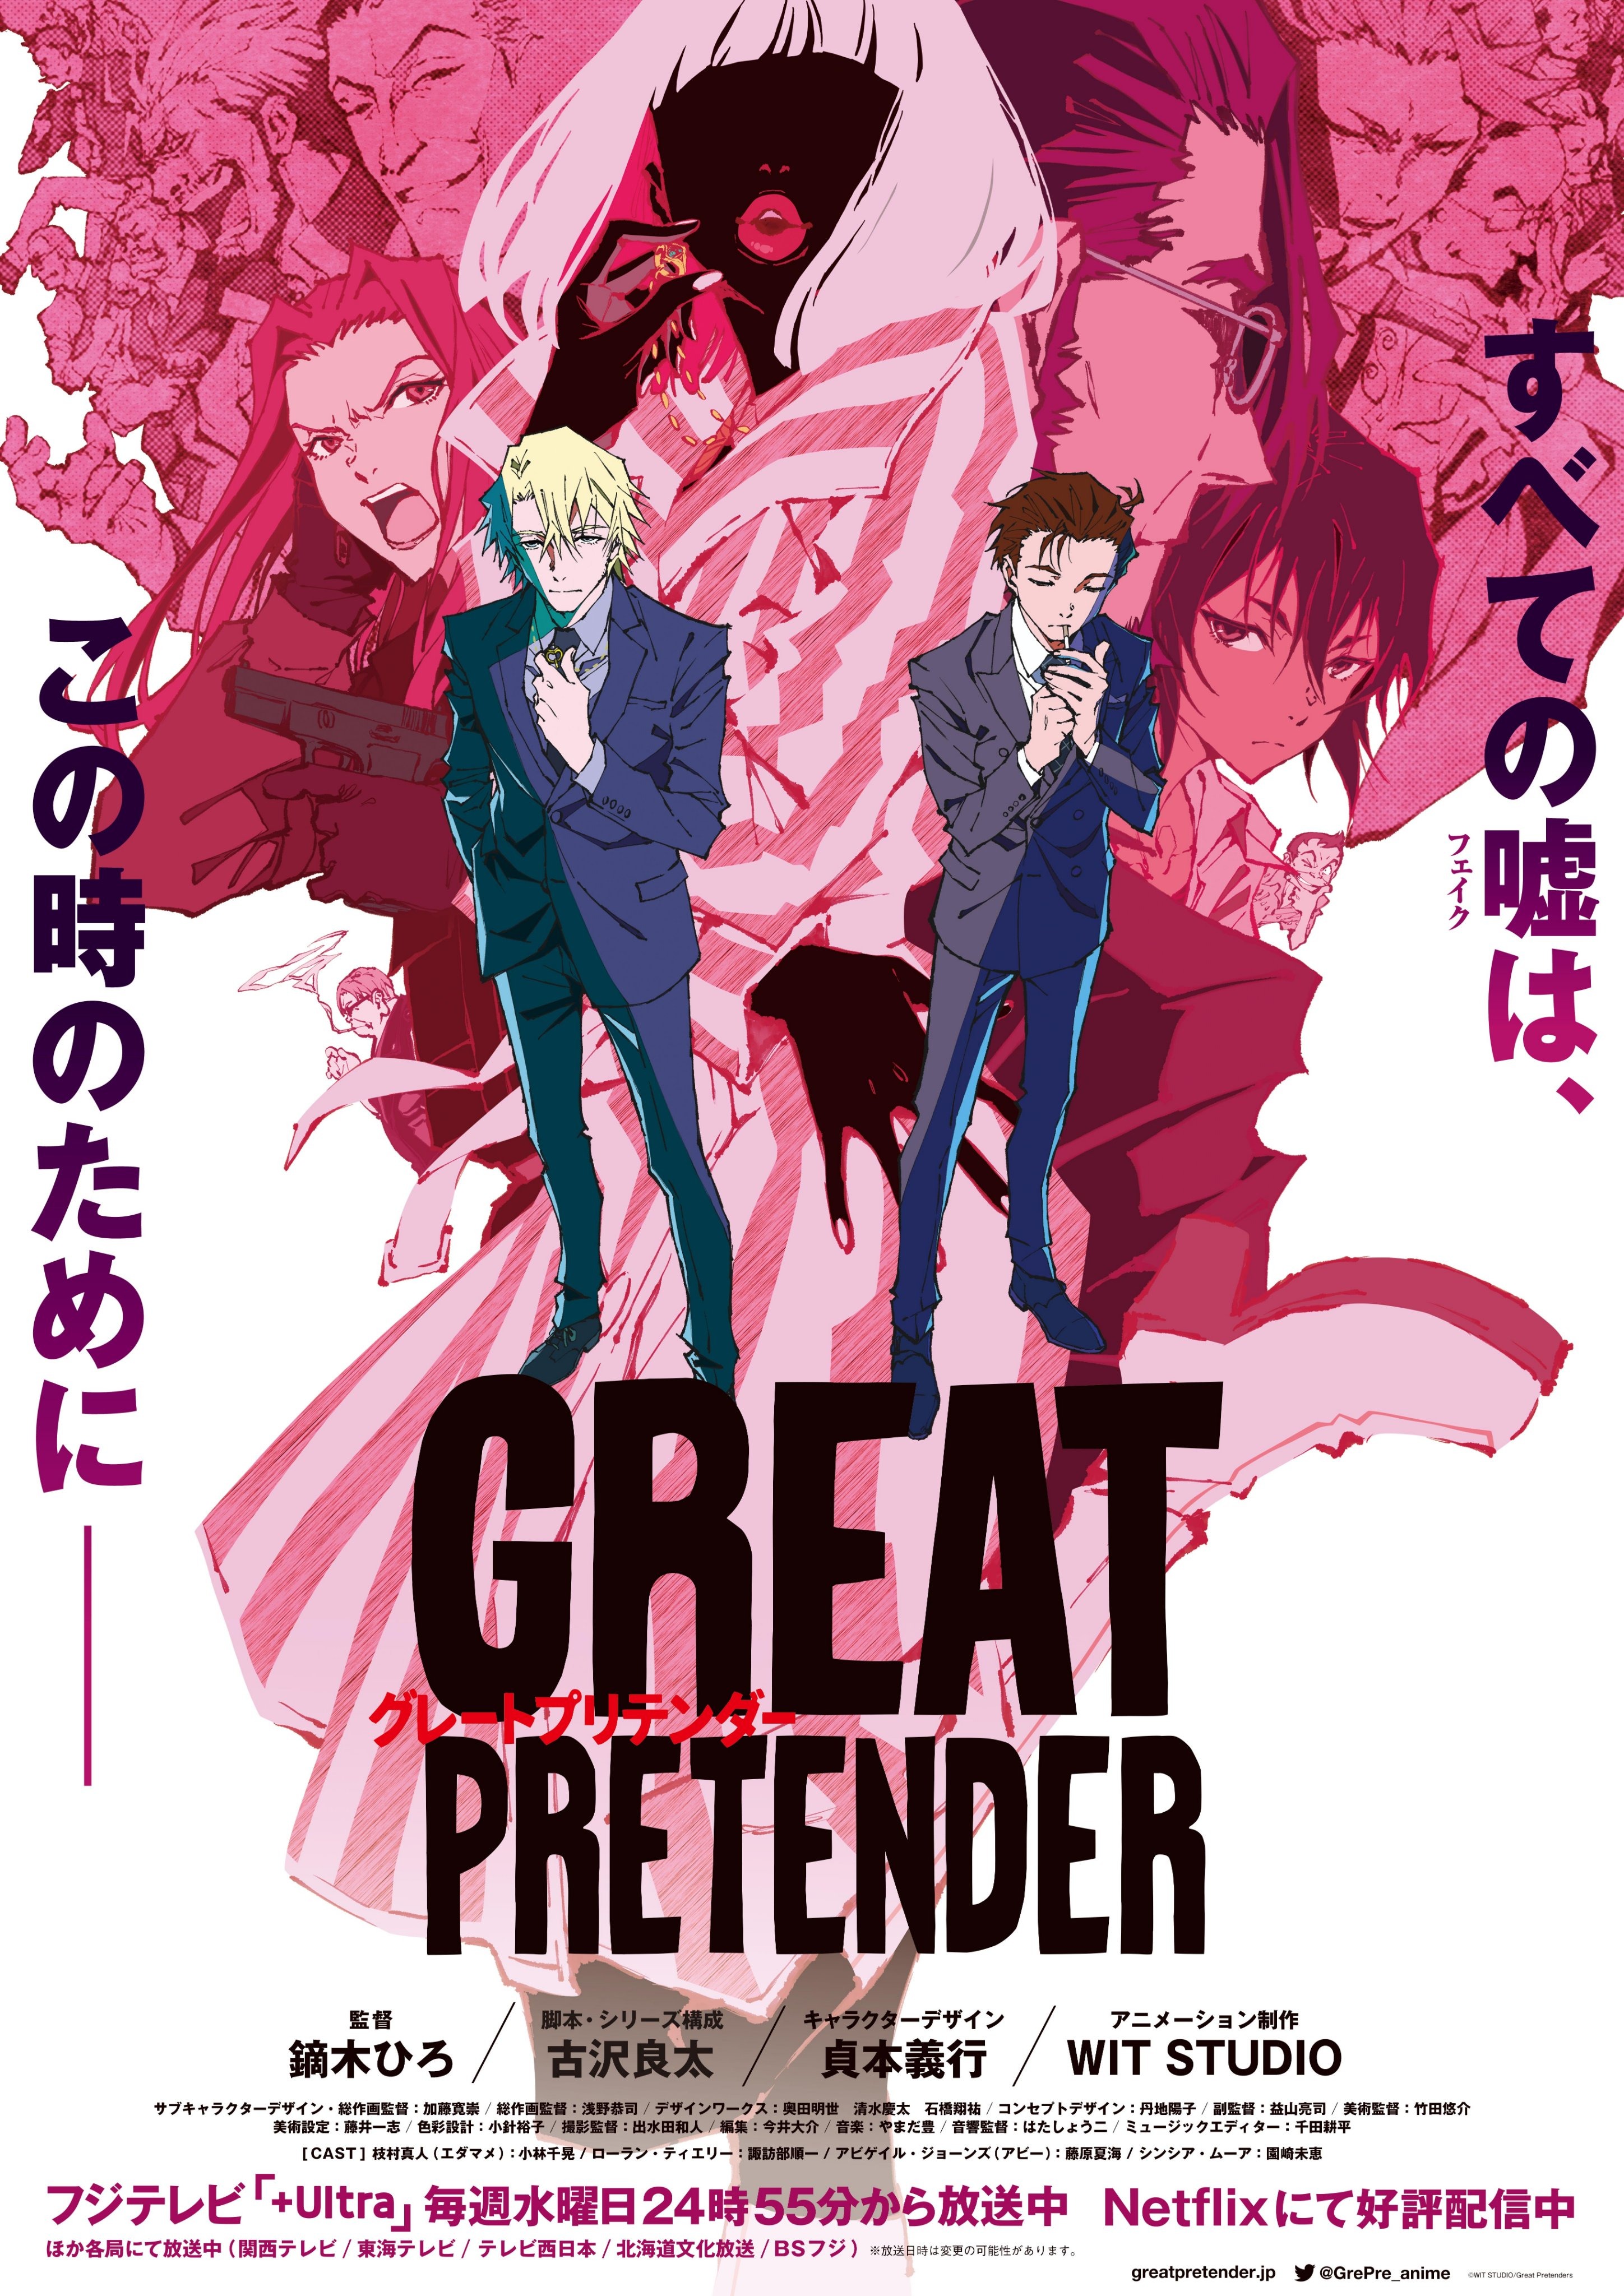 Crunchyroll - GREAT PRETENDER TV Anime Releases Totally Not Fake New Visual  for Case 4